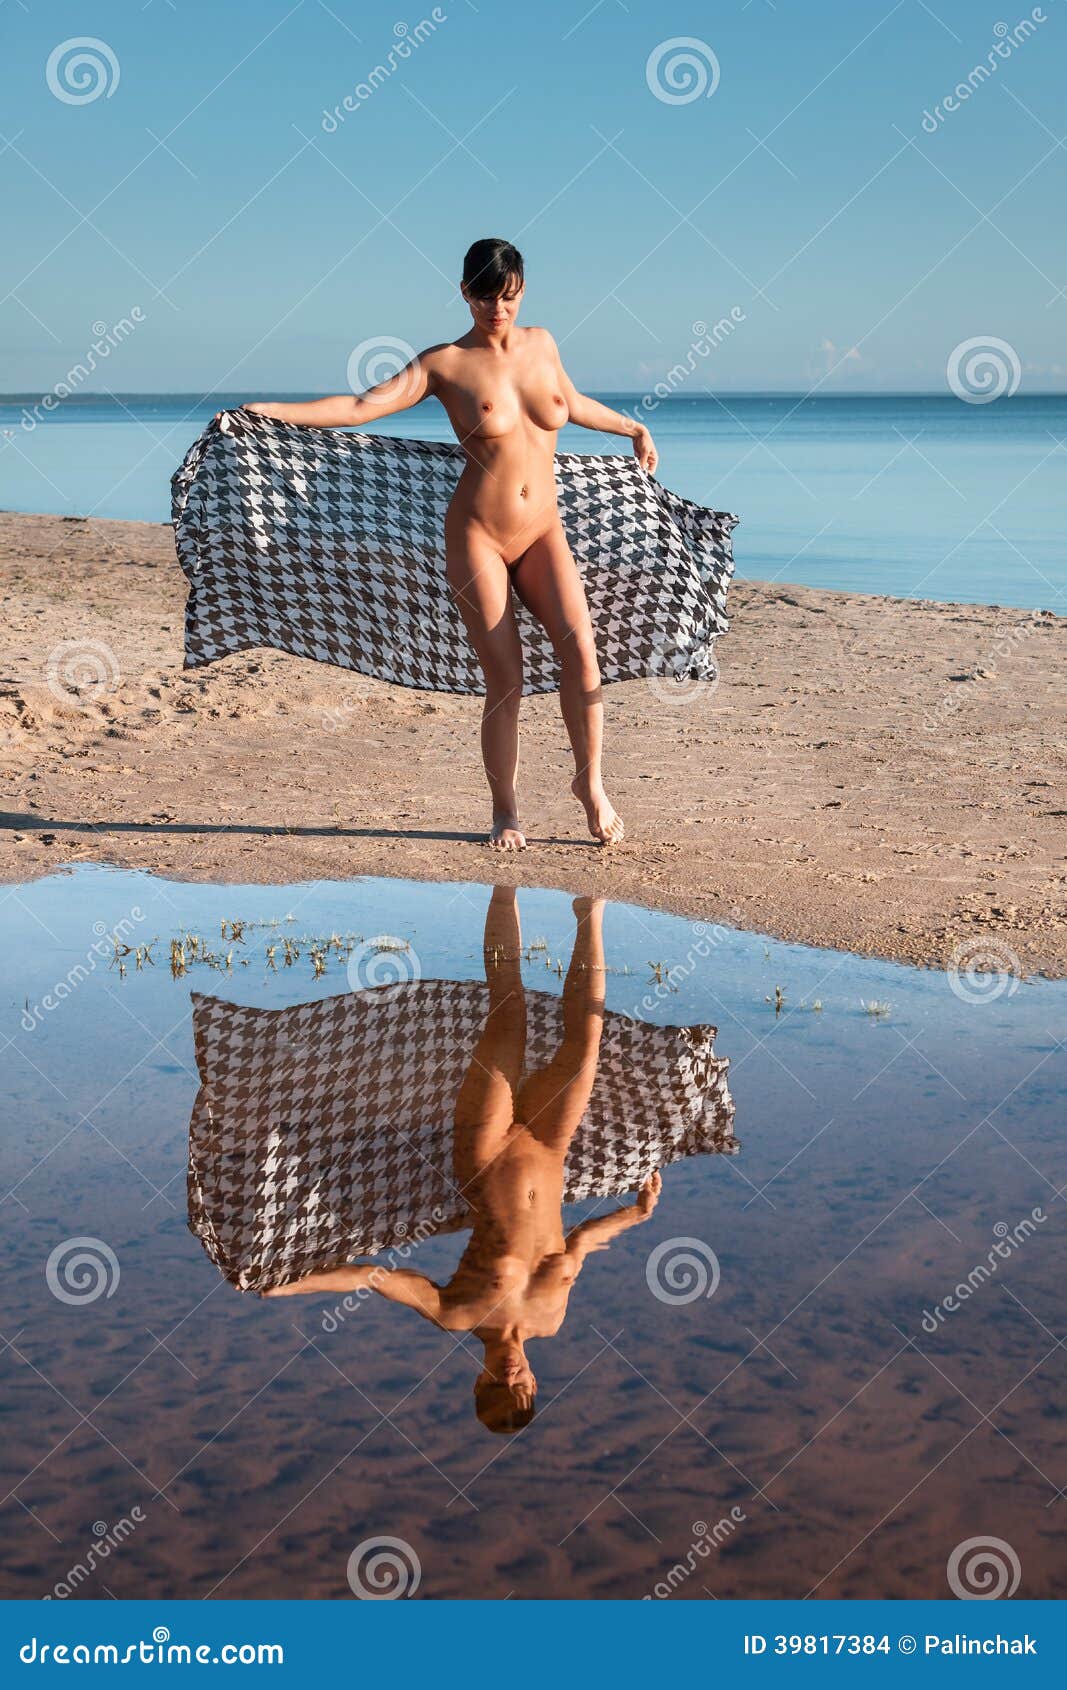 chicas desnudas en la playa